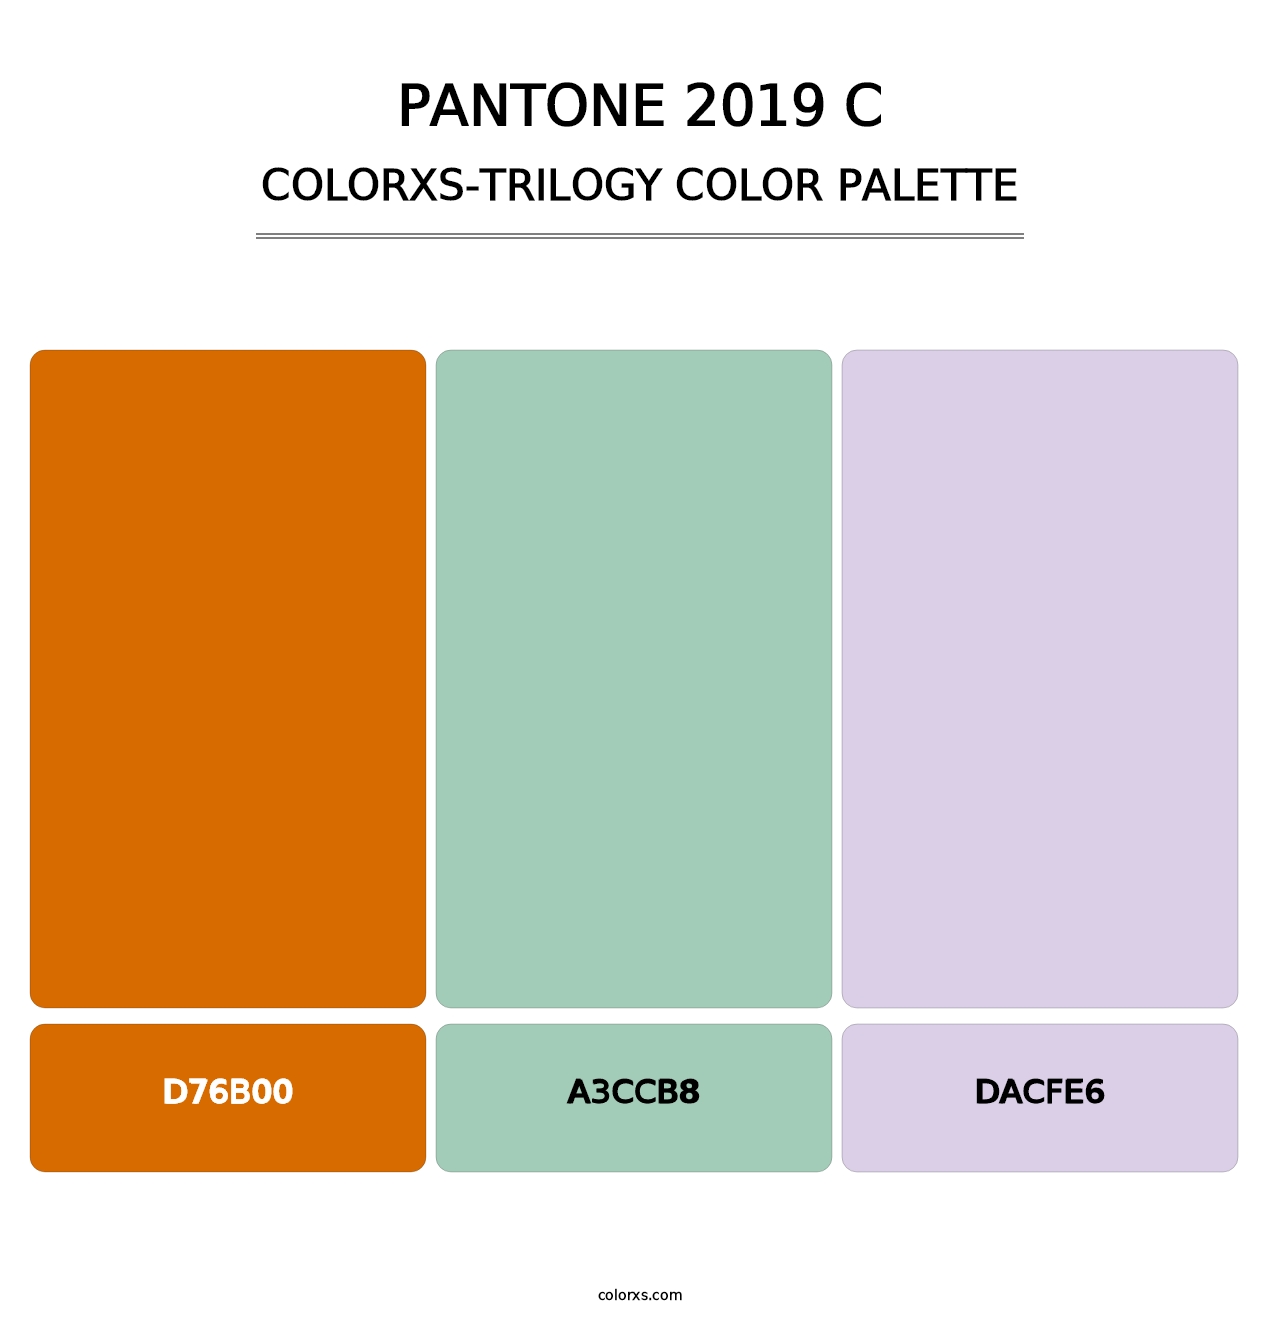 PANTONE 2019 C - Colorxs Trilogy Palette